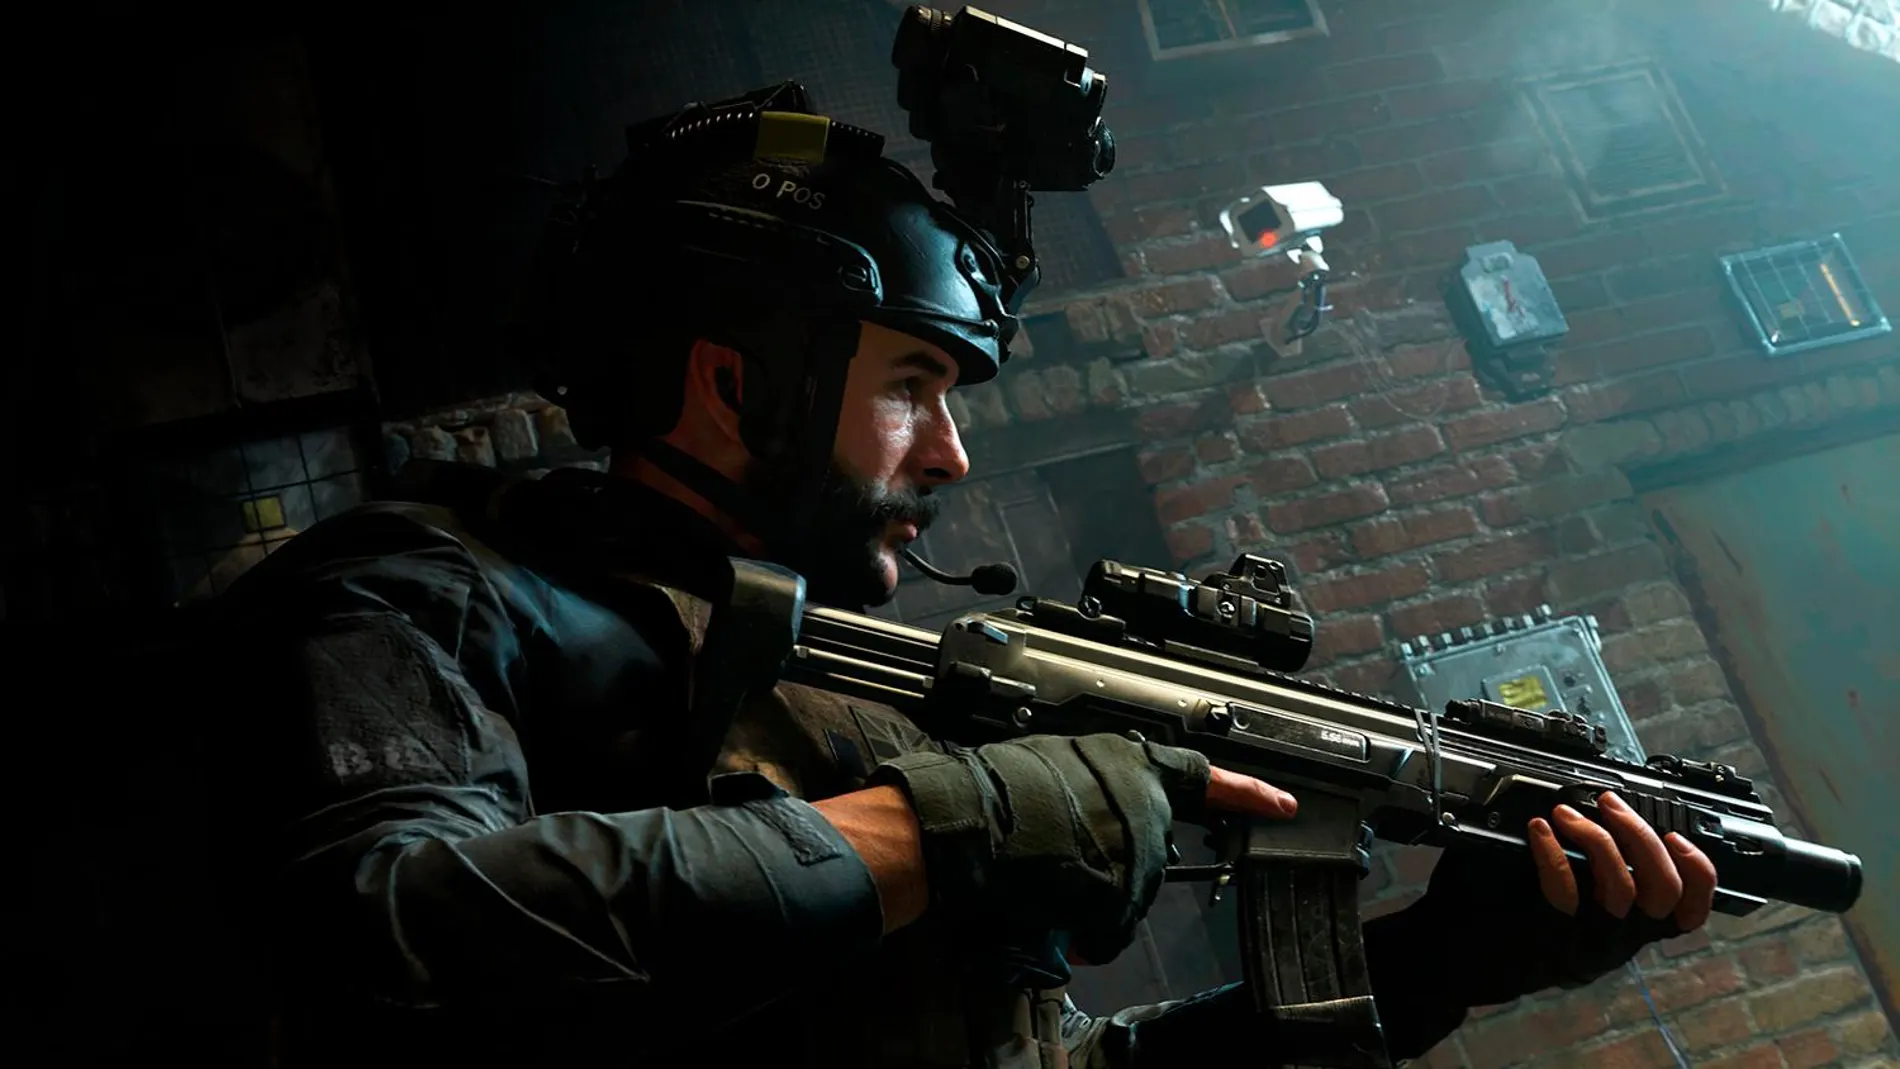 Imagen del videojuego de guerra "Call of Duty"